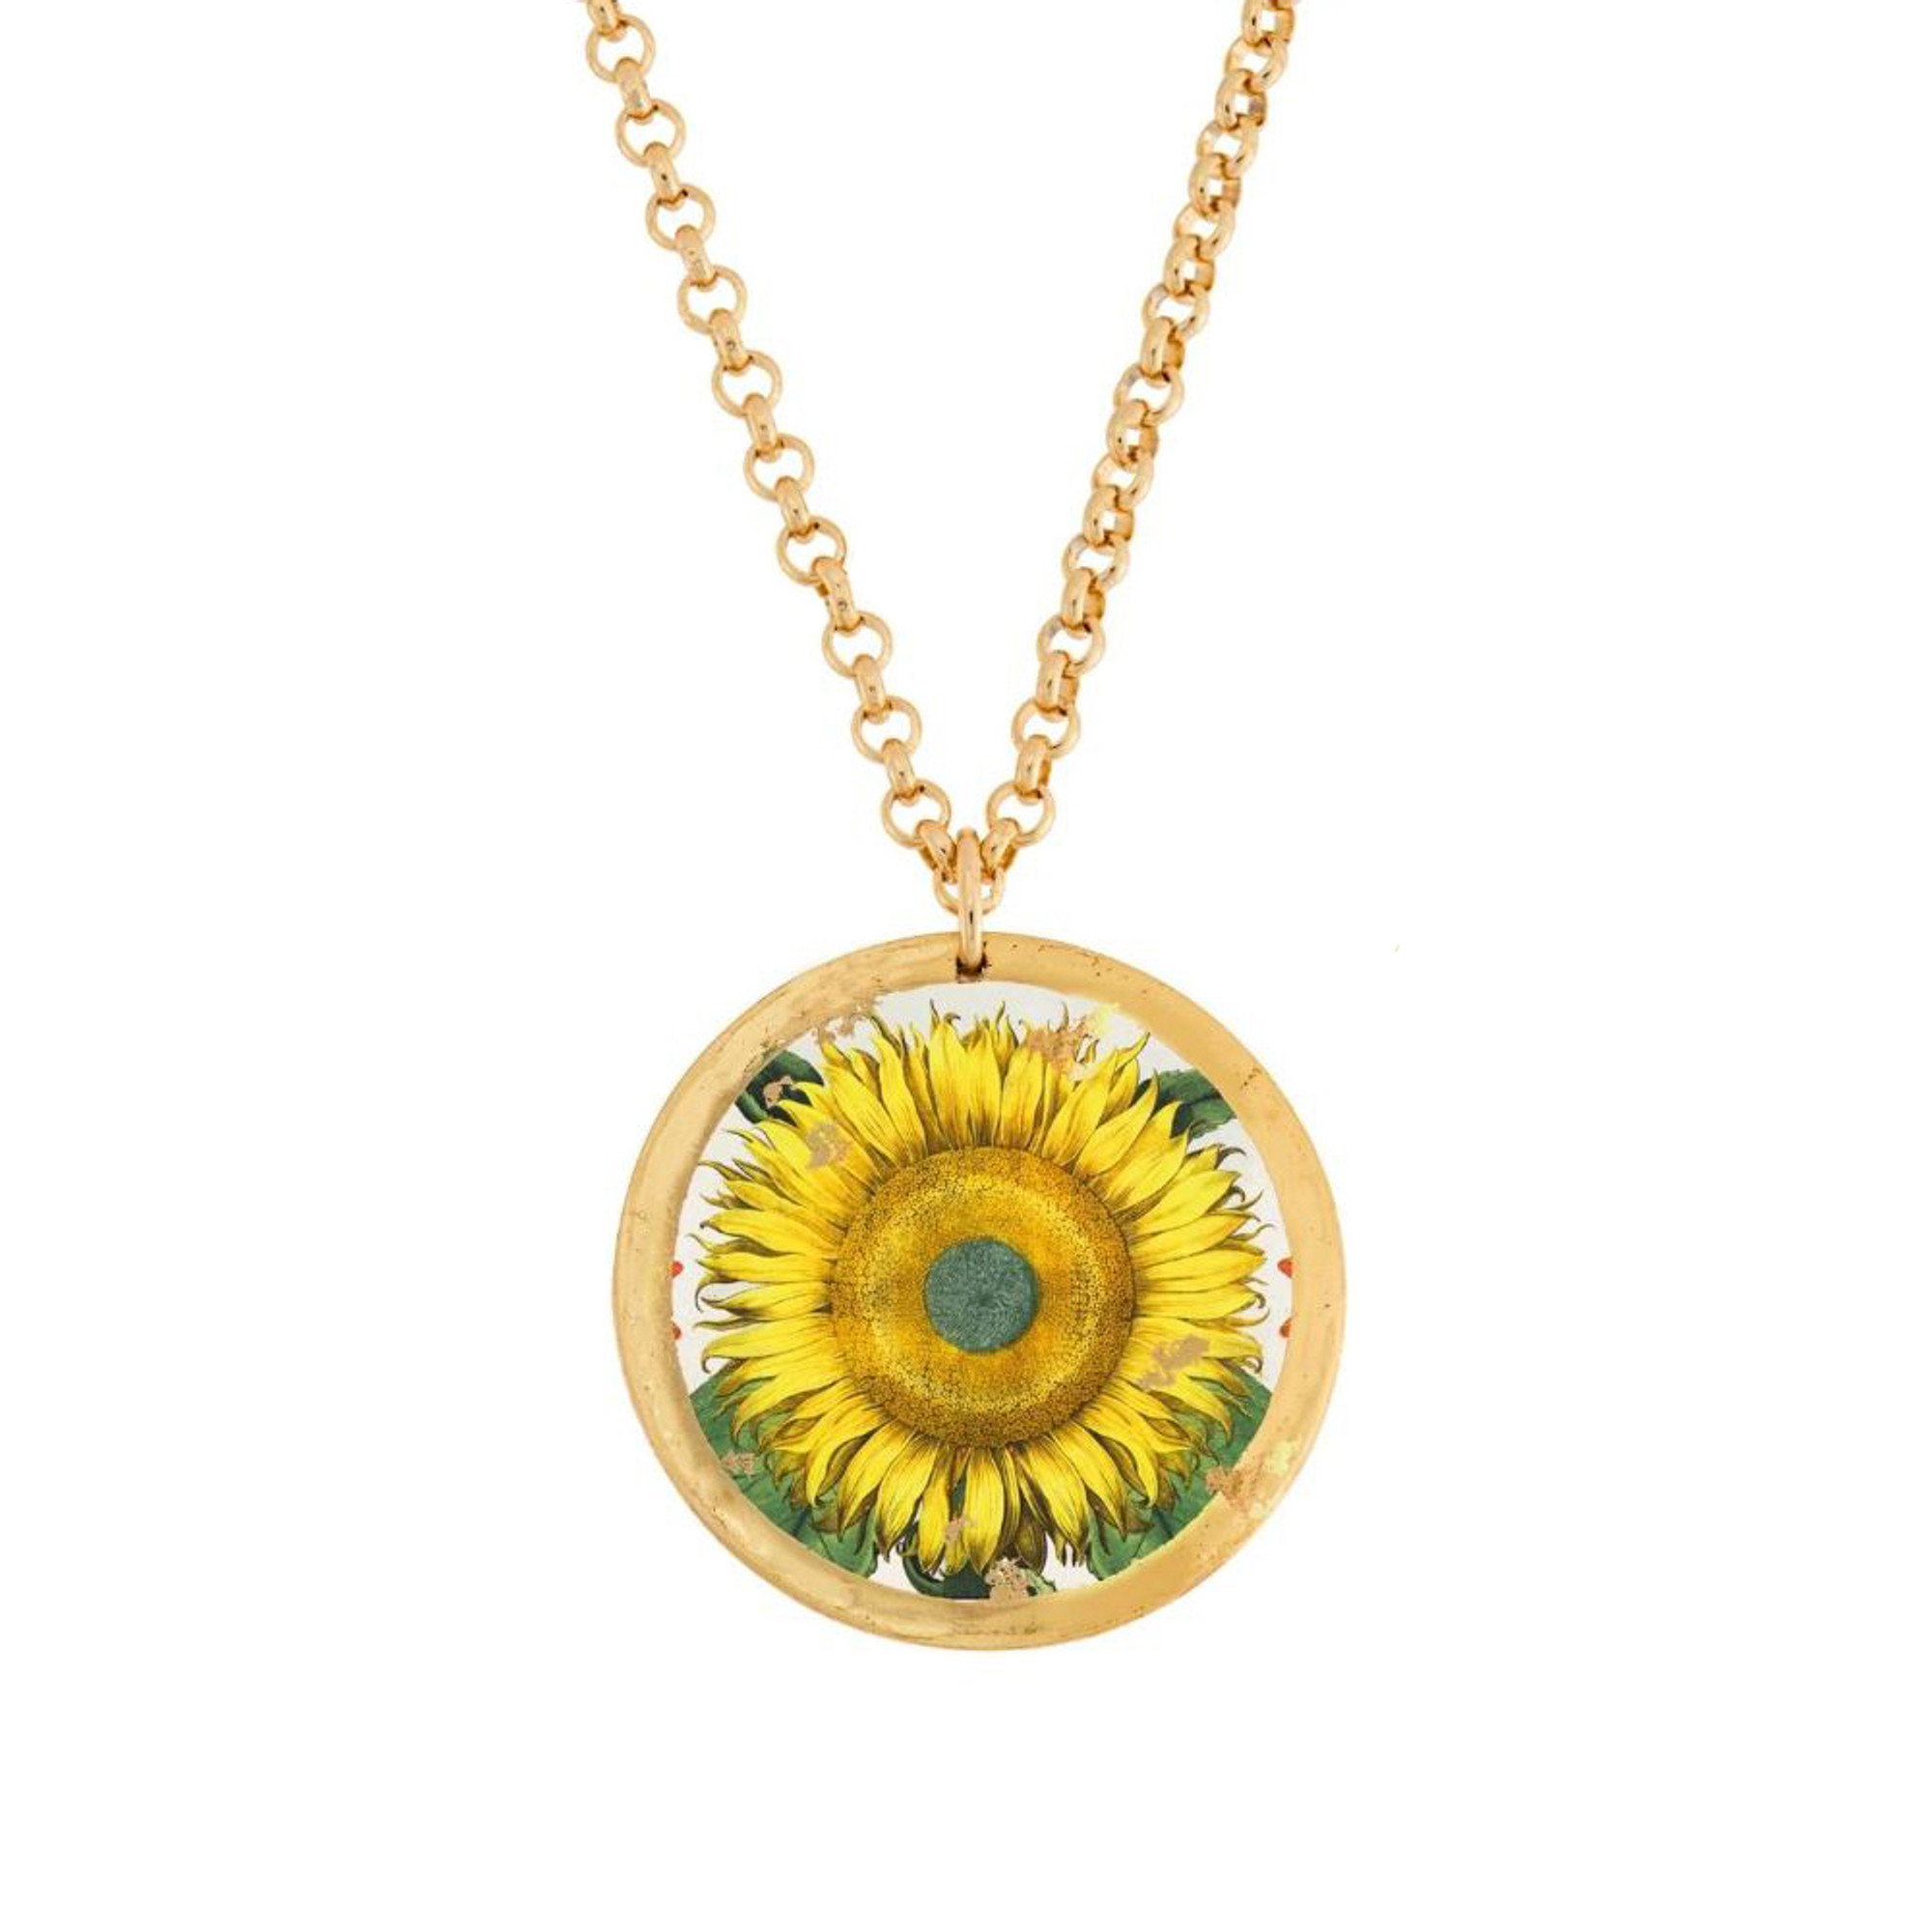 22k Gold Leaf, Brass & Enamel Sunflower Necklace by Evocateur